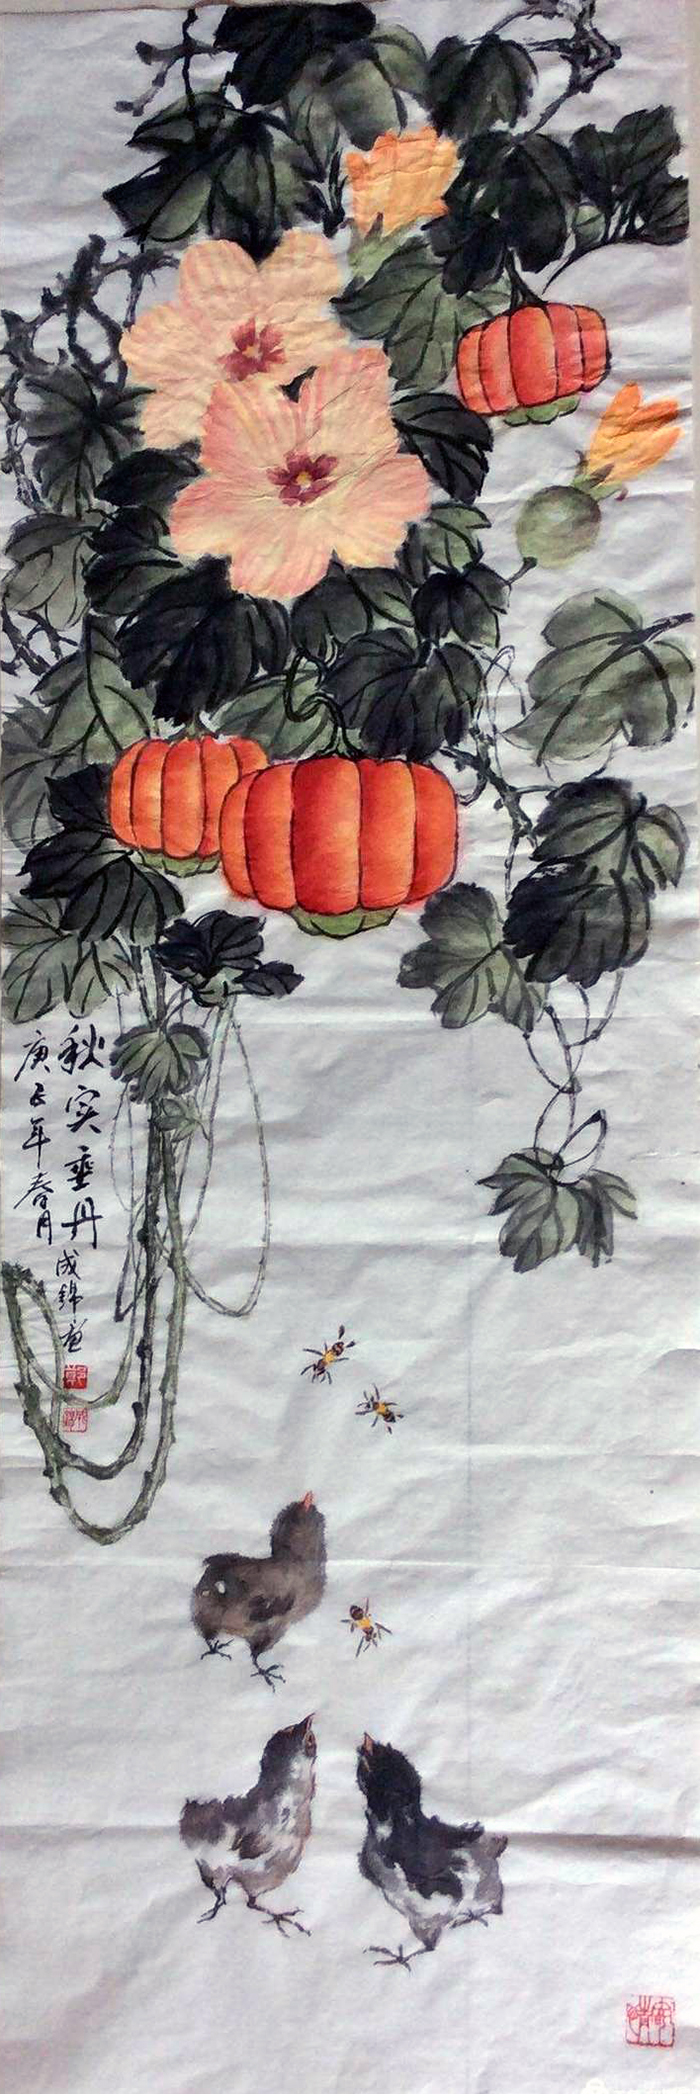 市老干部书画联谊会庆祝中国共产党成立99周年书画艺术网络展之一国画